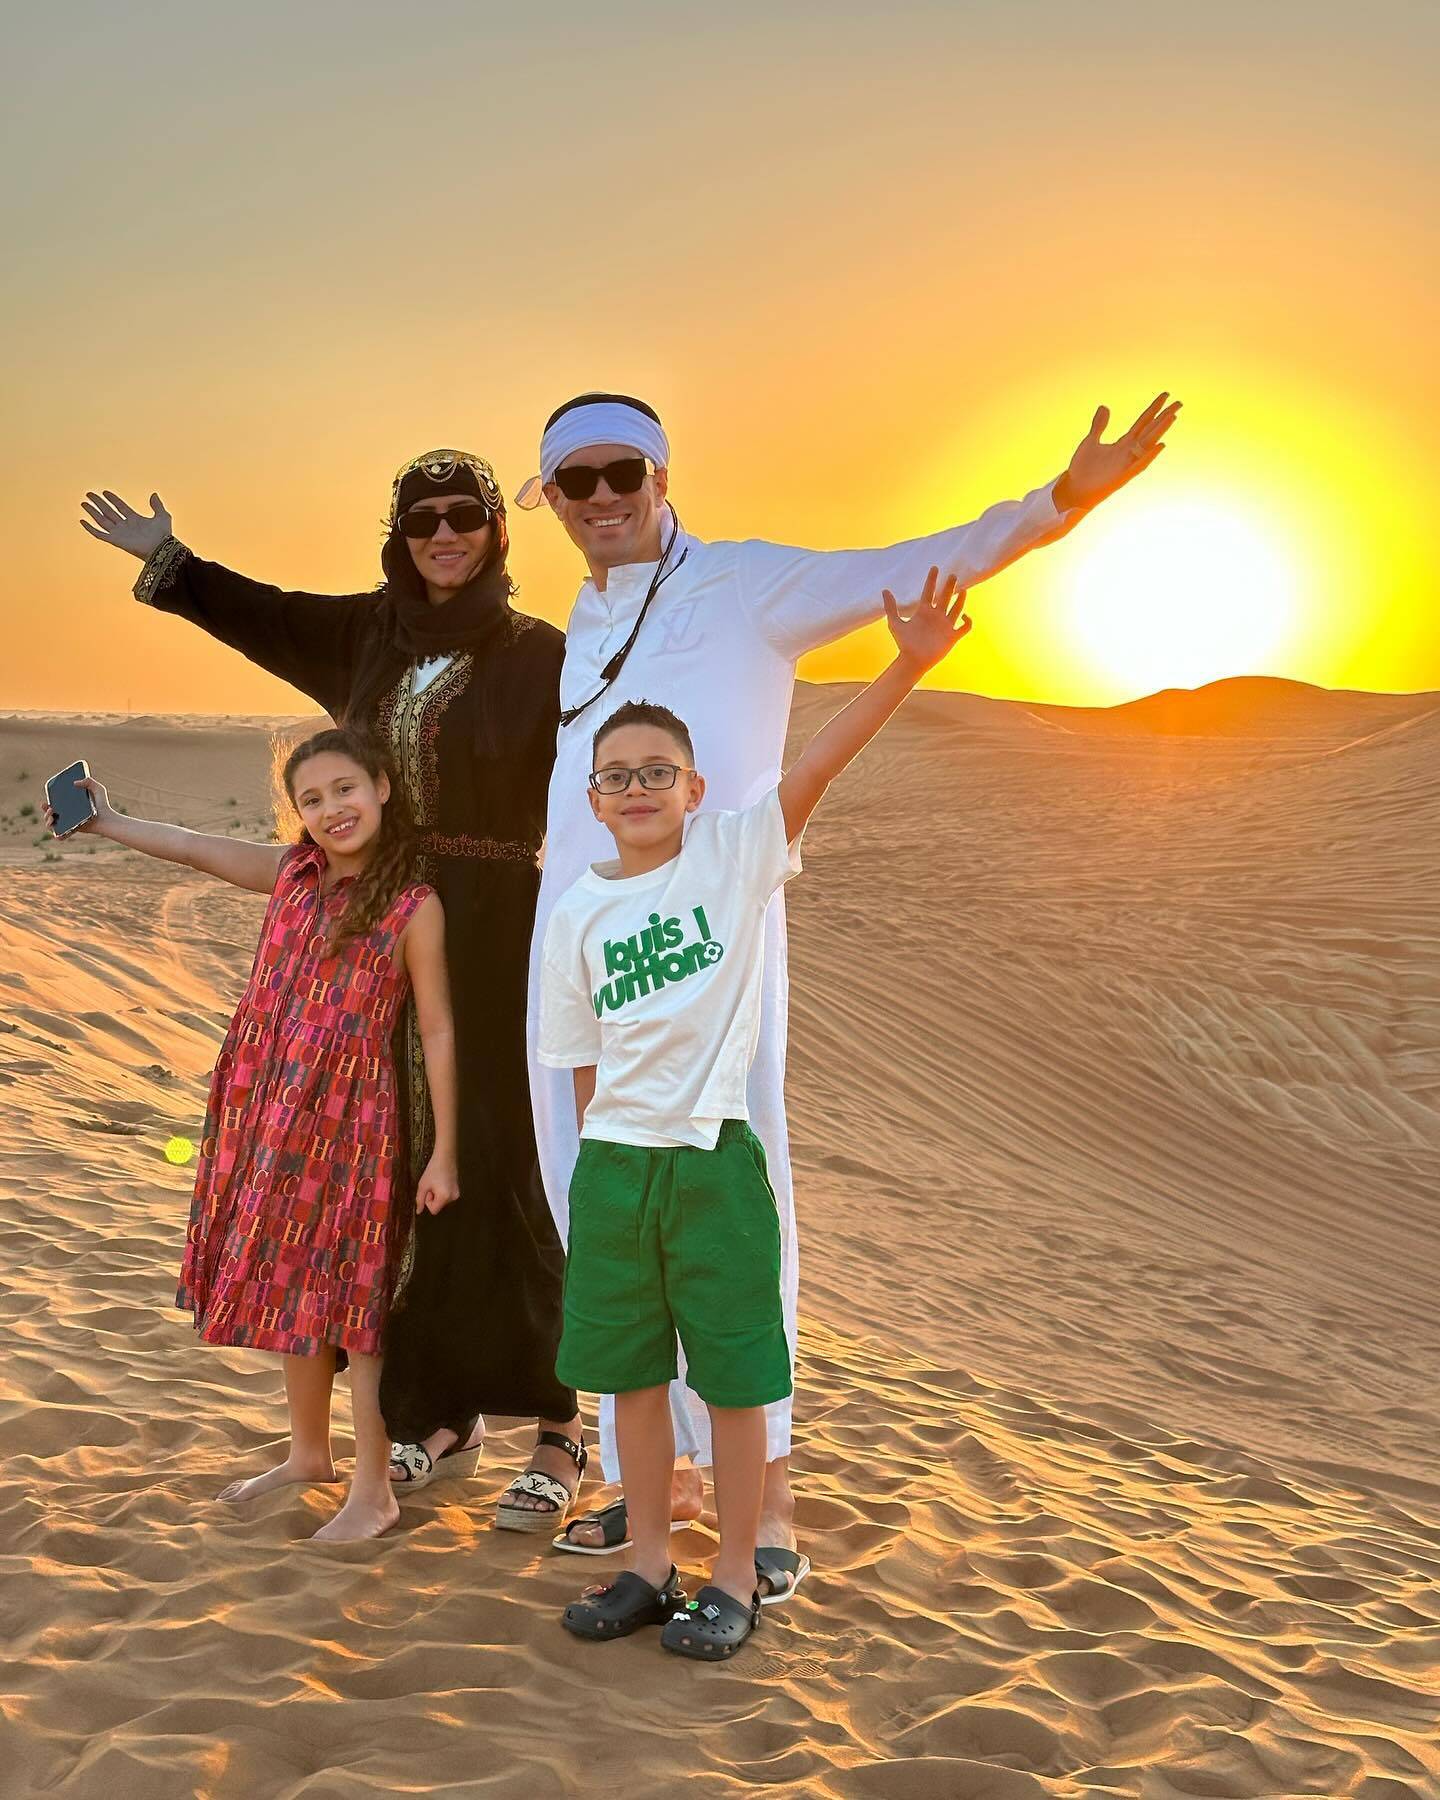 享受生活！莫伊塞斯与家人迪拜度假 穿阿拉伯服饰玩鹰(图)